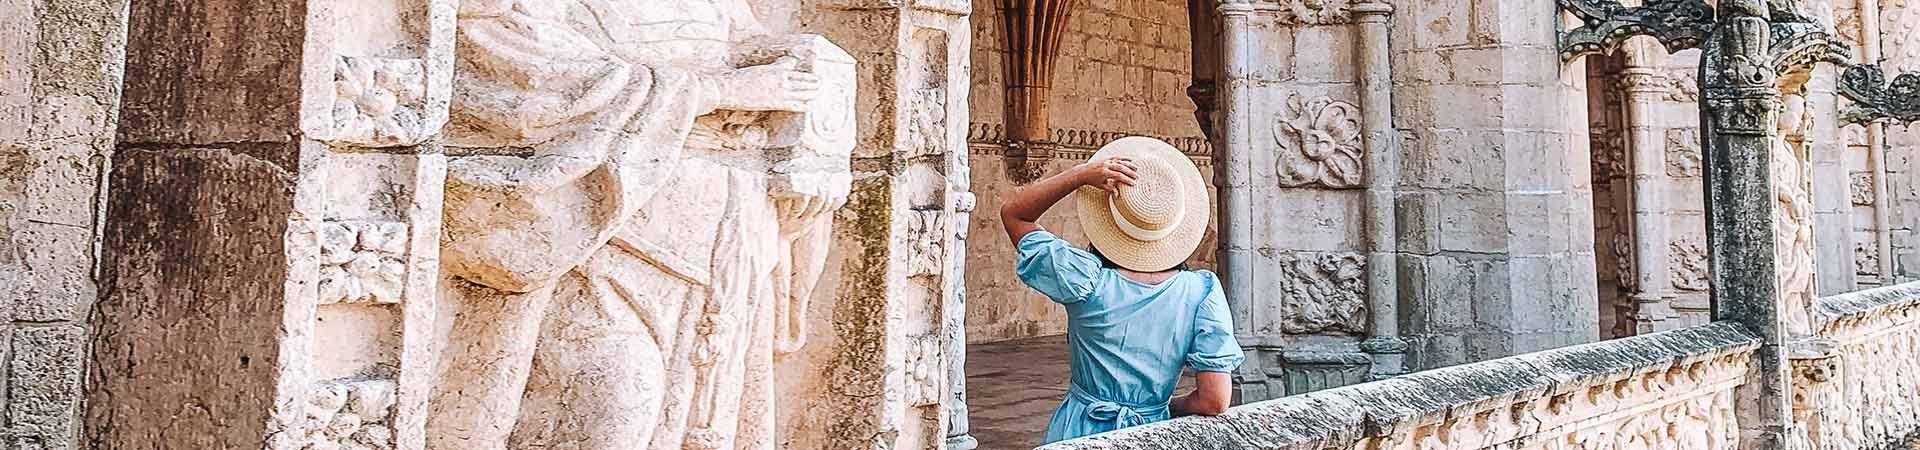 Imagen formada por una señora de espaldas, contemplando un monumento de piedra blanca. La señora tiene cabello negro rizado y lleva puesto un vestido azul y un sombrero de paja beige que sostiene en su mano izquierda.